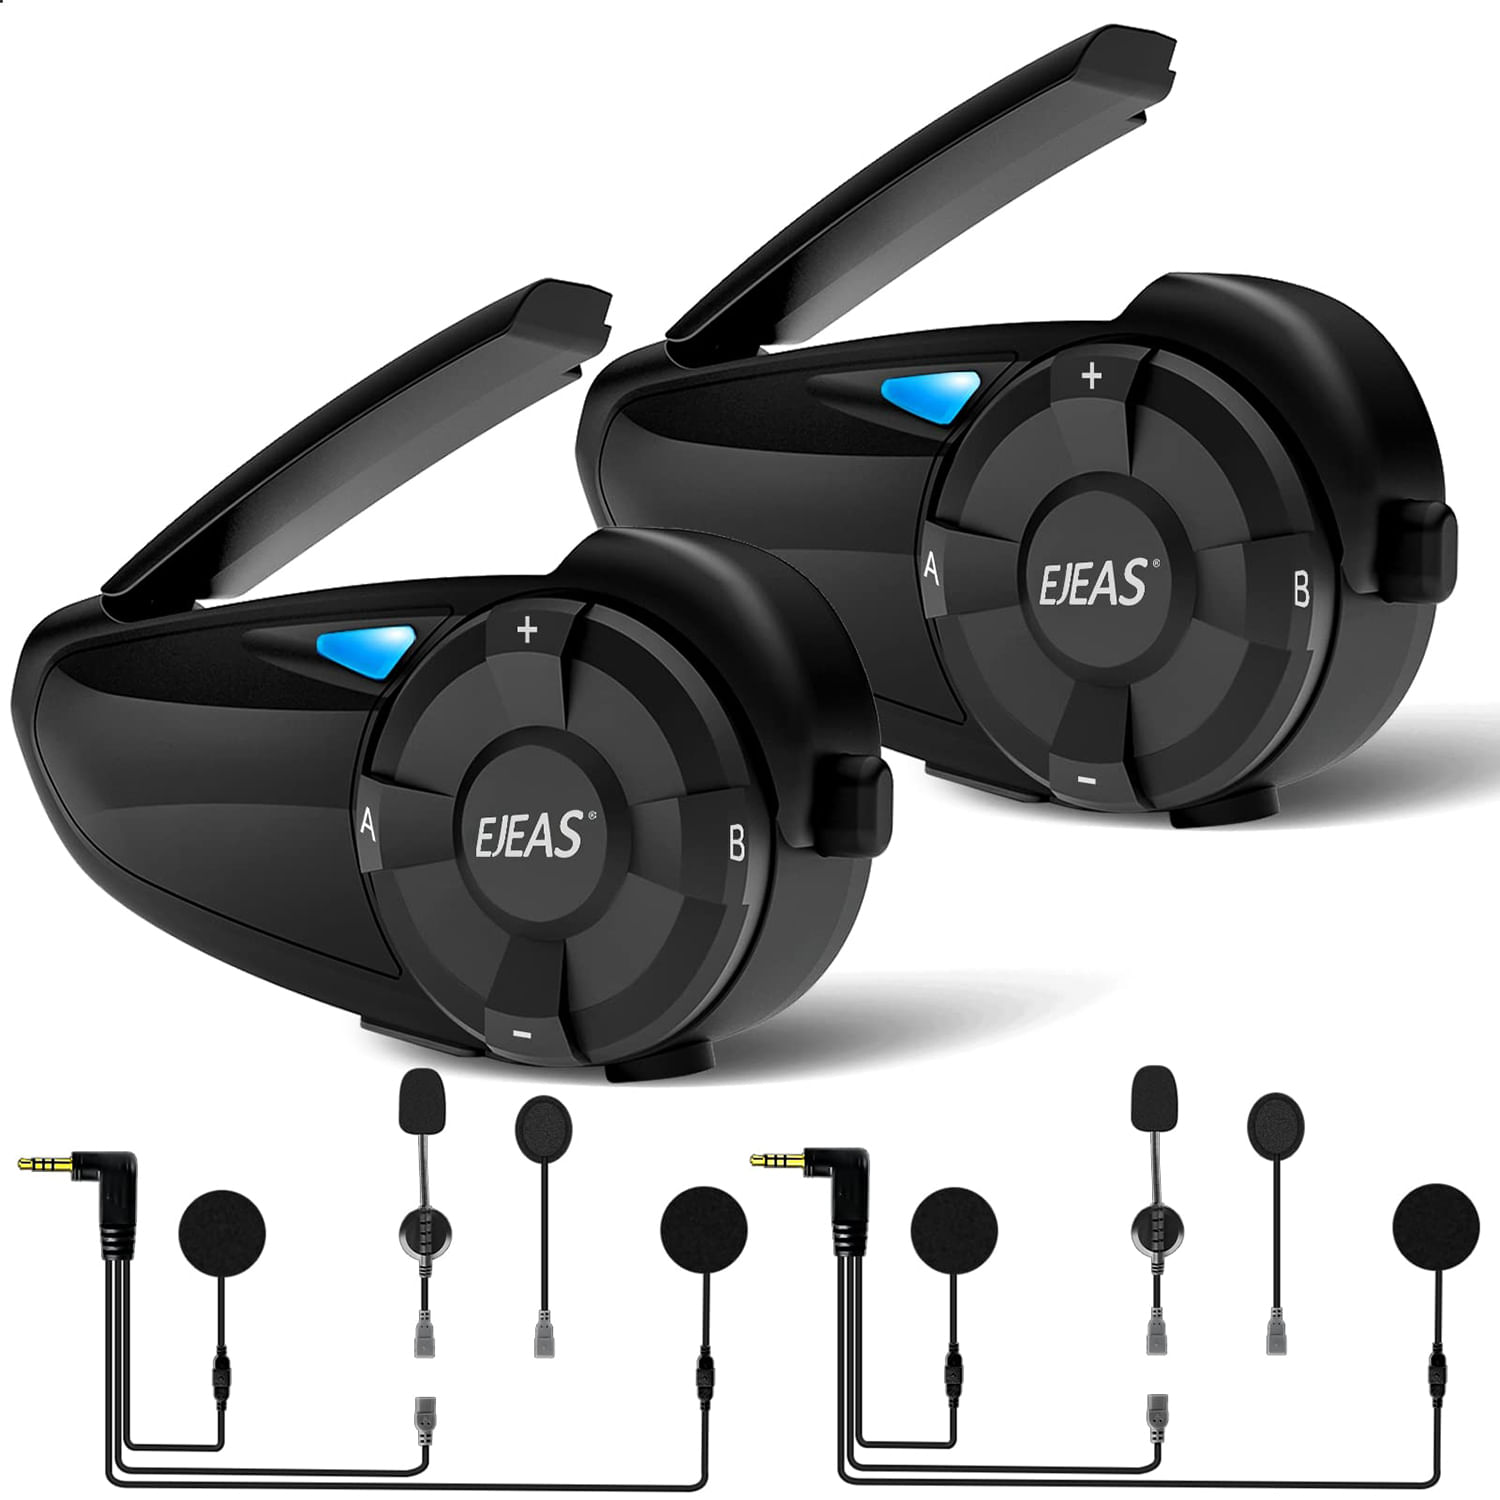 Intercomunicador Bluetooth Para Casco Ejeas Q7 Intercomunicador Dedicado Para Motocicleta (2Pcs)